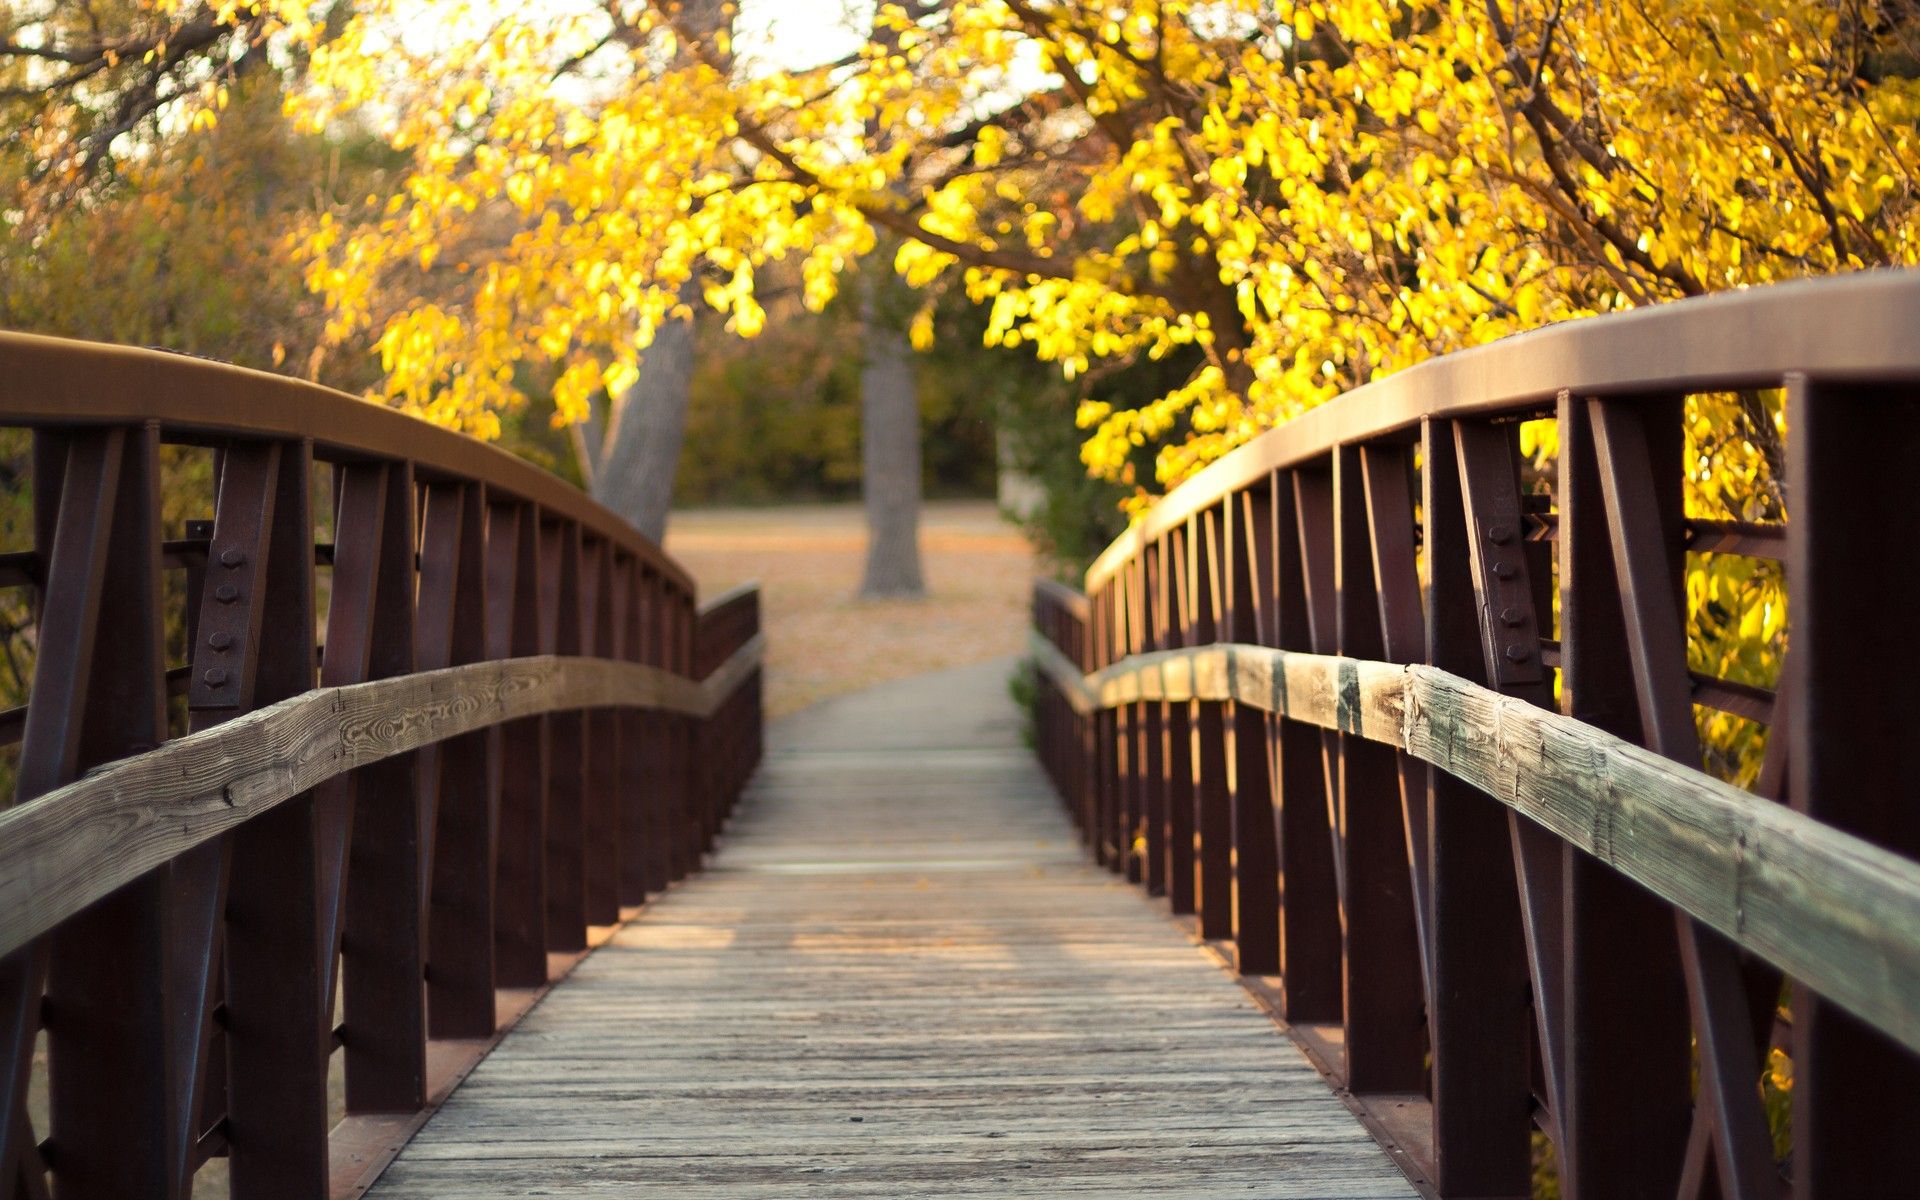 پرتره ای دیدنی از درخت های زرد رنگ کنار پل چوبی زیبا